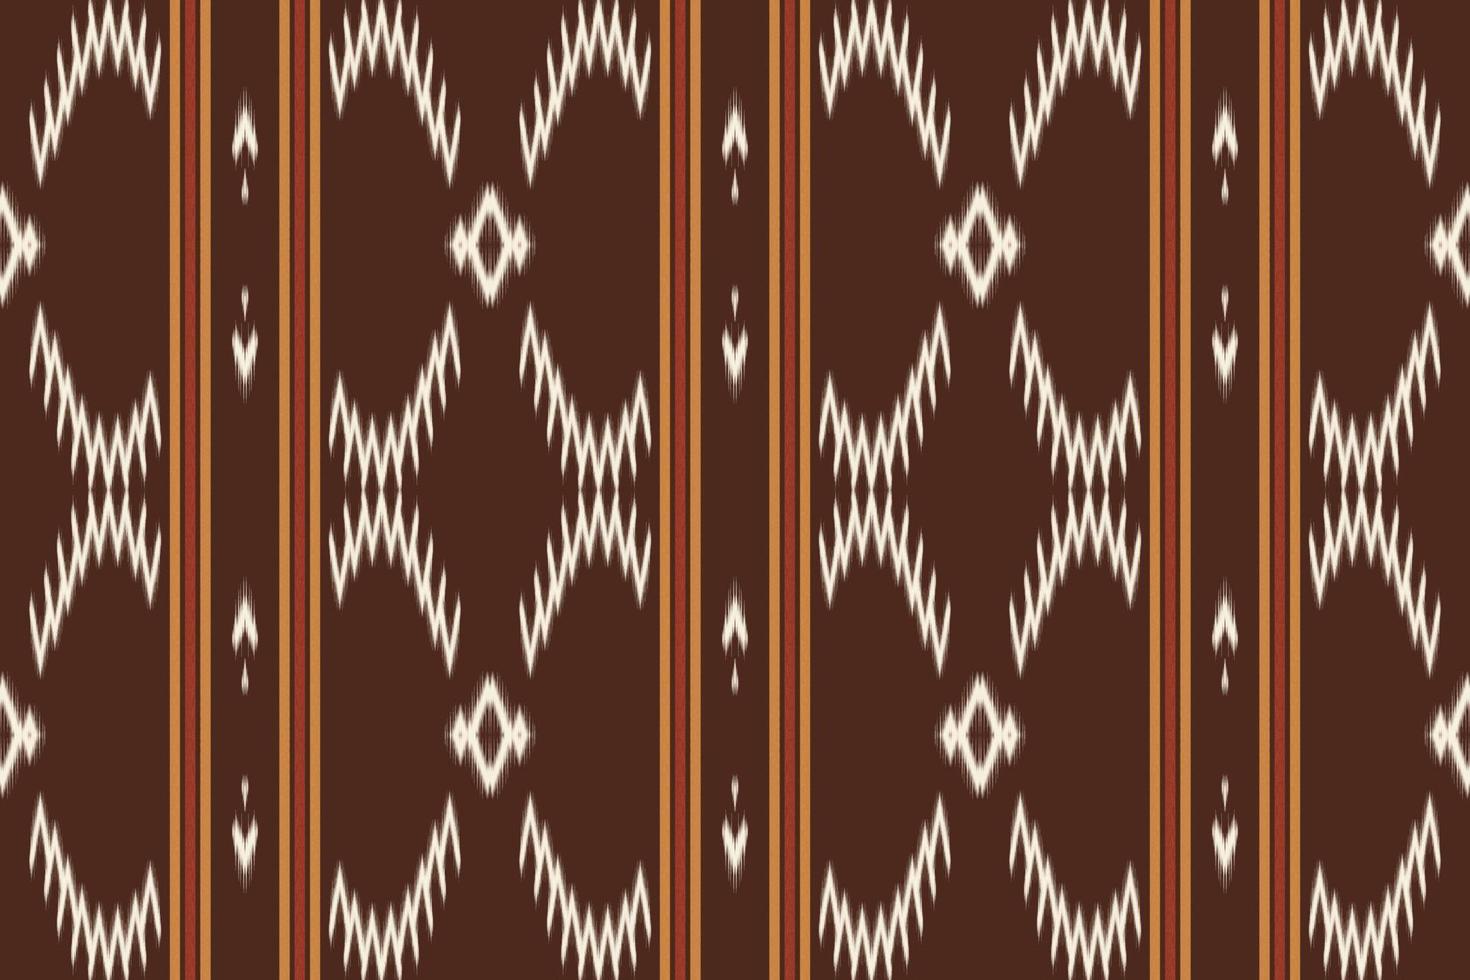 ikat puntos patrón transparente de color tribal. étnico geométrico batik ikkat vector digital diseño textil para estampados tela sari mughal cepillo símbolo franjas textura kurti kurtis kurtas